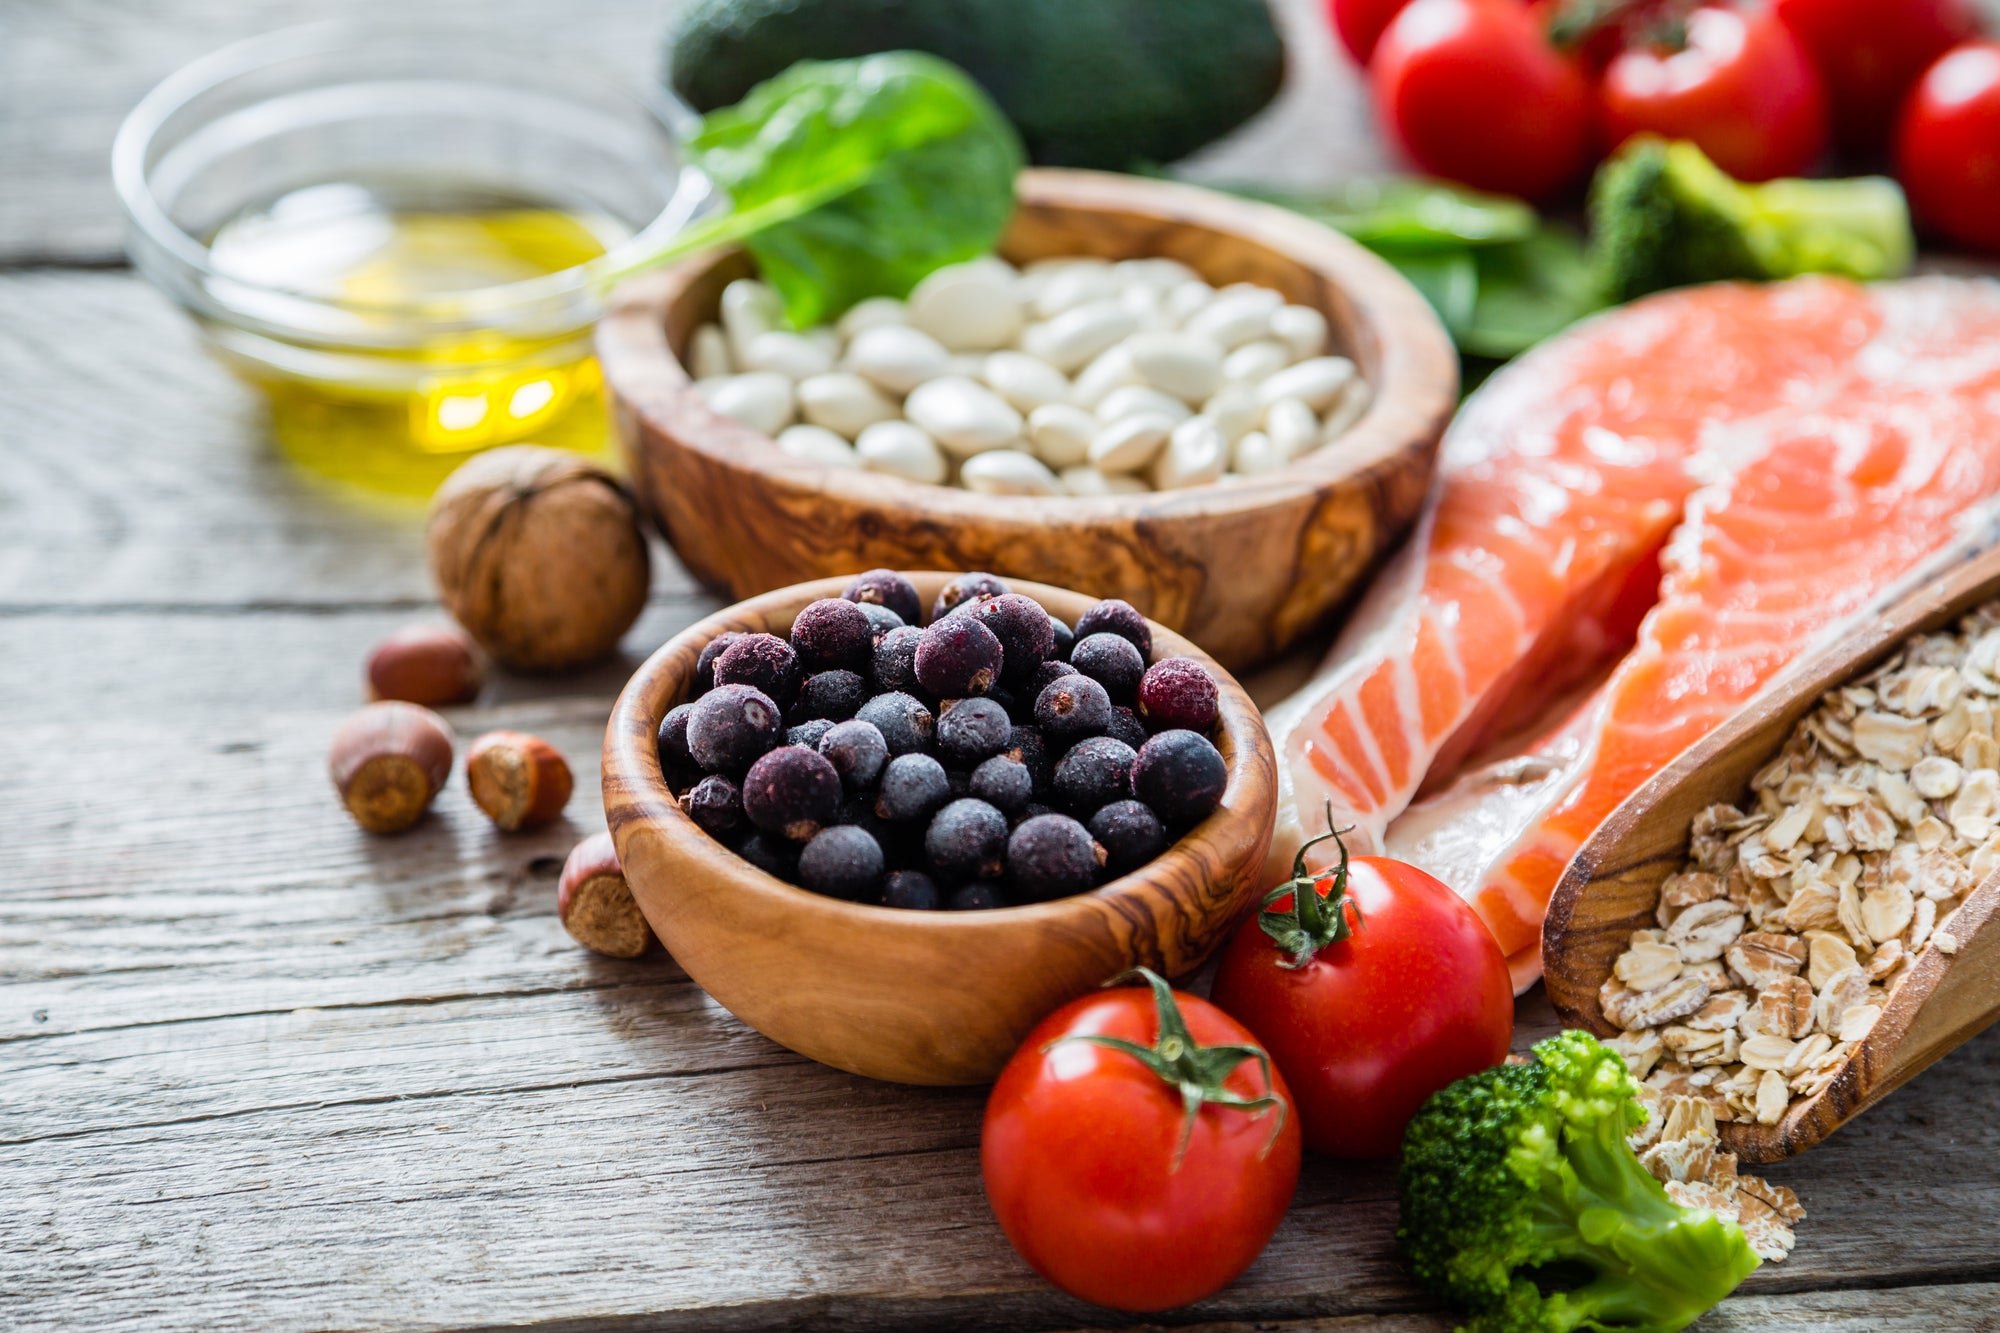 Bowls Of Healthy Ingredients & Foods